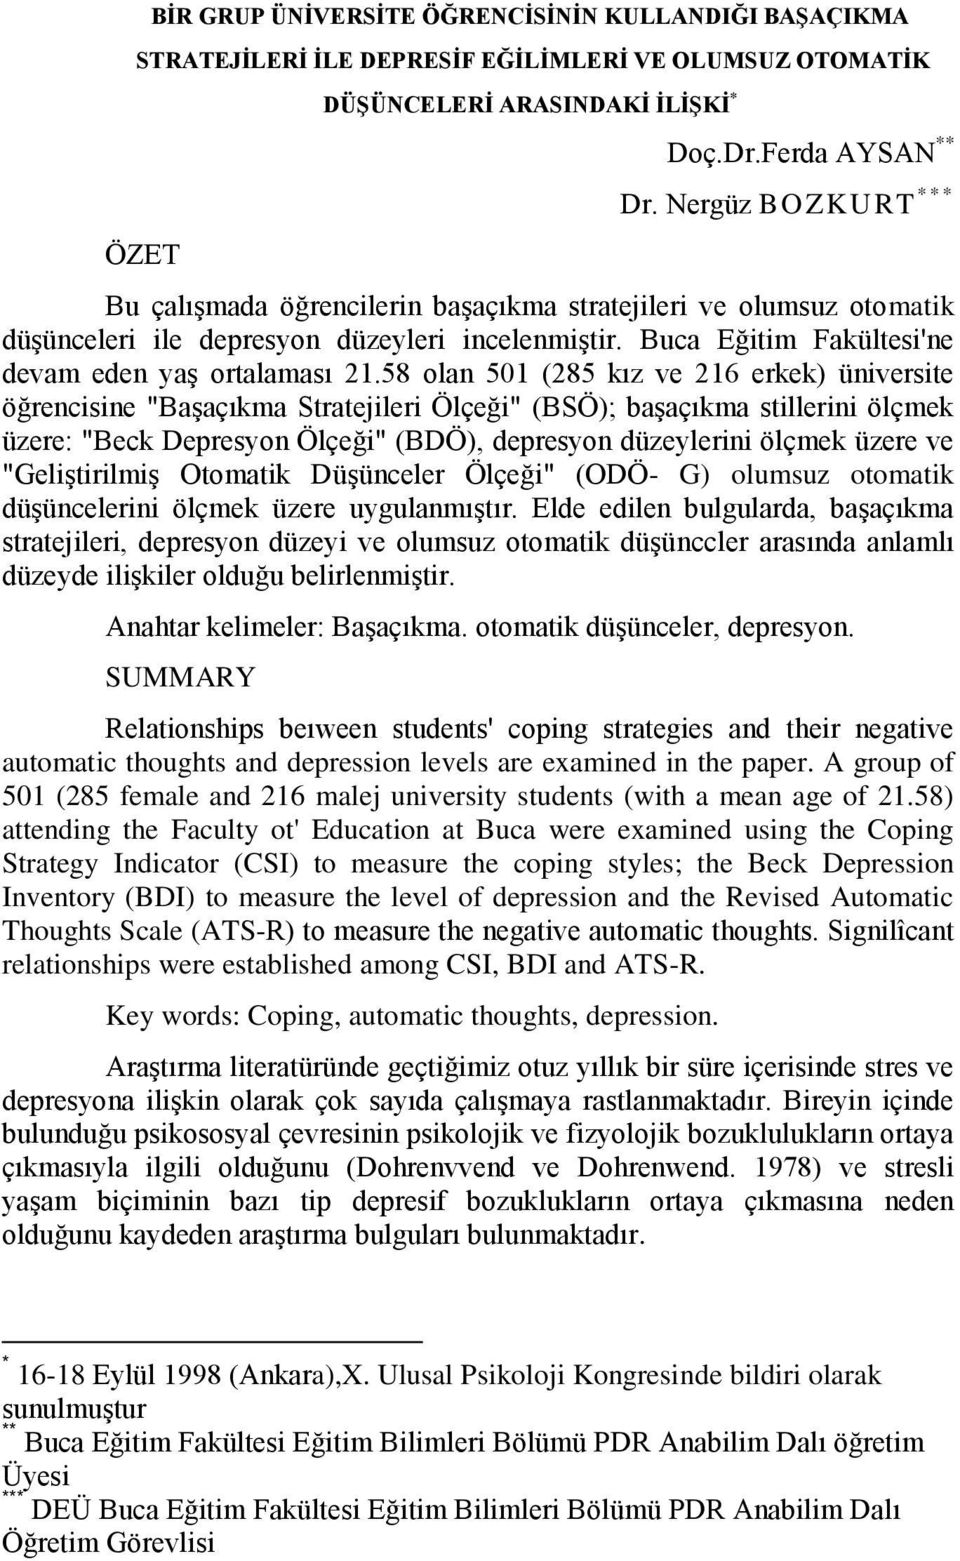 58 olan 501 (285 kız ve 216 erkek) üniversite öğrencisine "Başaçıkma Stratejileri Ölçeği" (BSÖ); başaçıkma stillerini ölçmek üzere: "Beck Depresyon Ölçeği" (BDÖ), depresyon düzeylerini ölçmek üzere